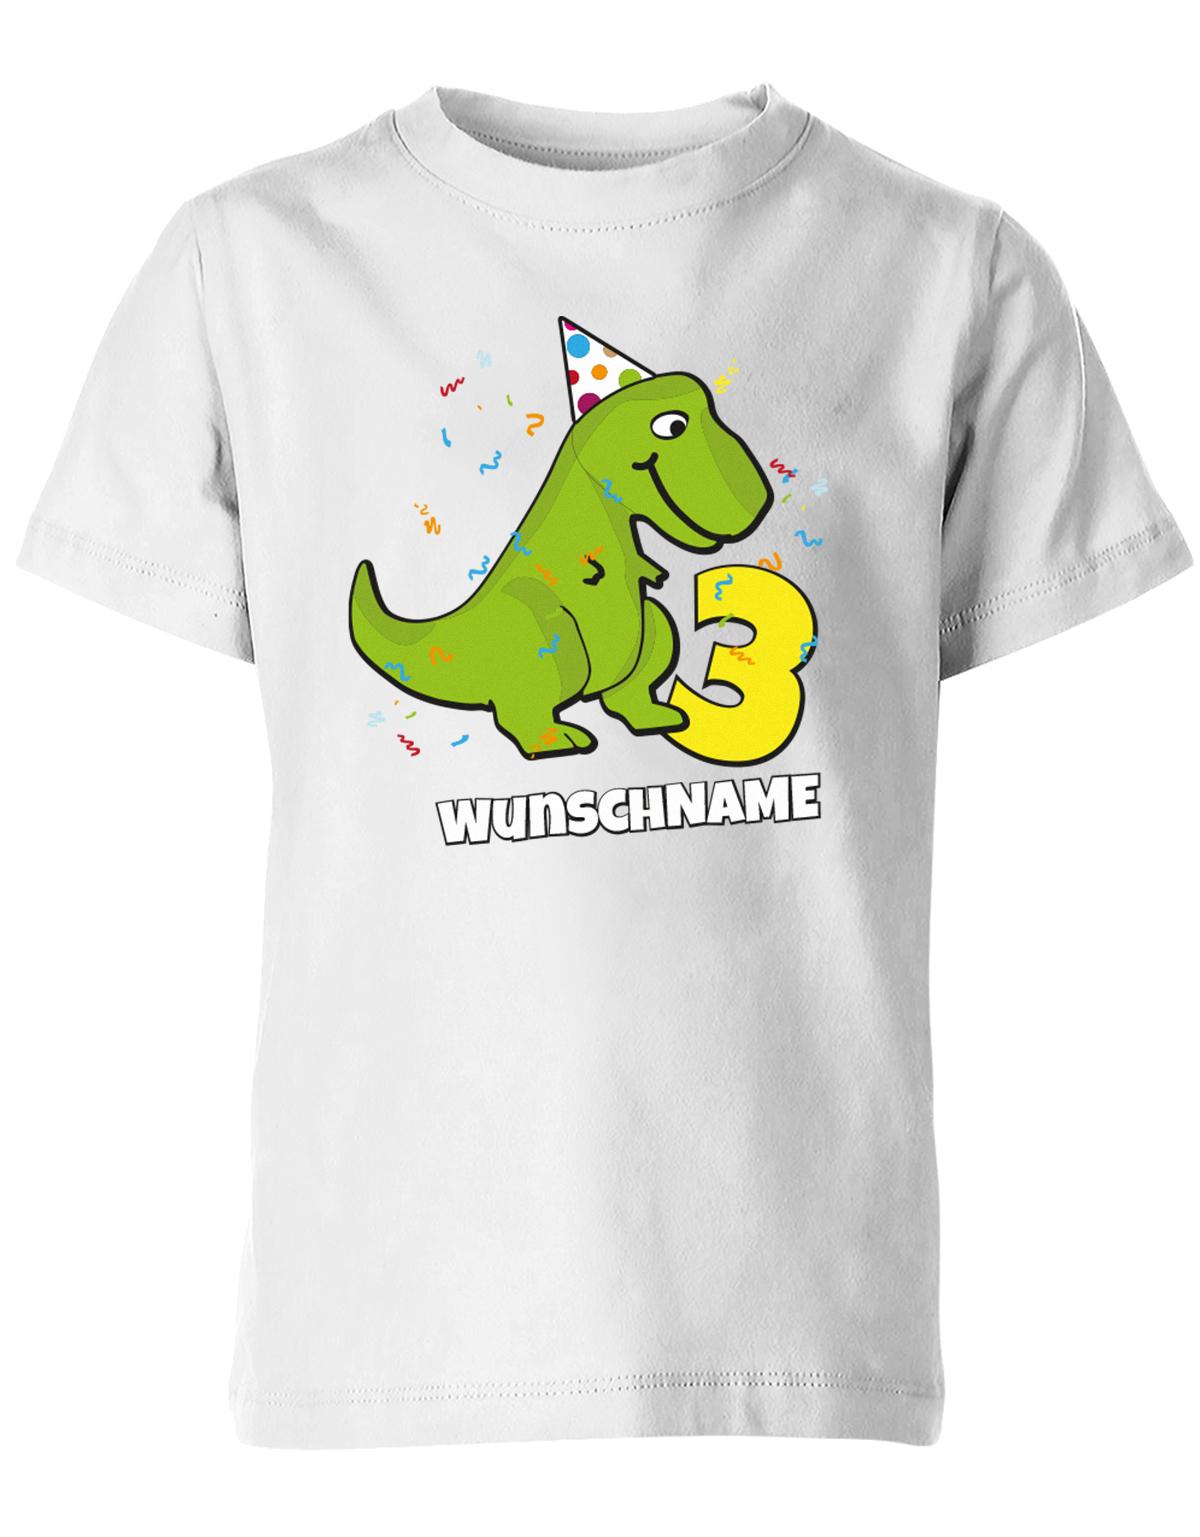 Zum dritten Geburtstag. T Rex Dinosaurier mit Geburtstagsmütze und Konfetti - Große 3 und personalisierbar mit Name vom Kind Weiss